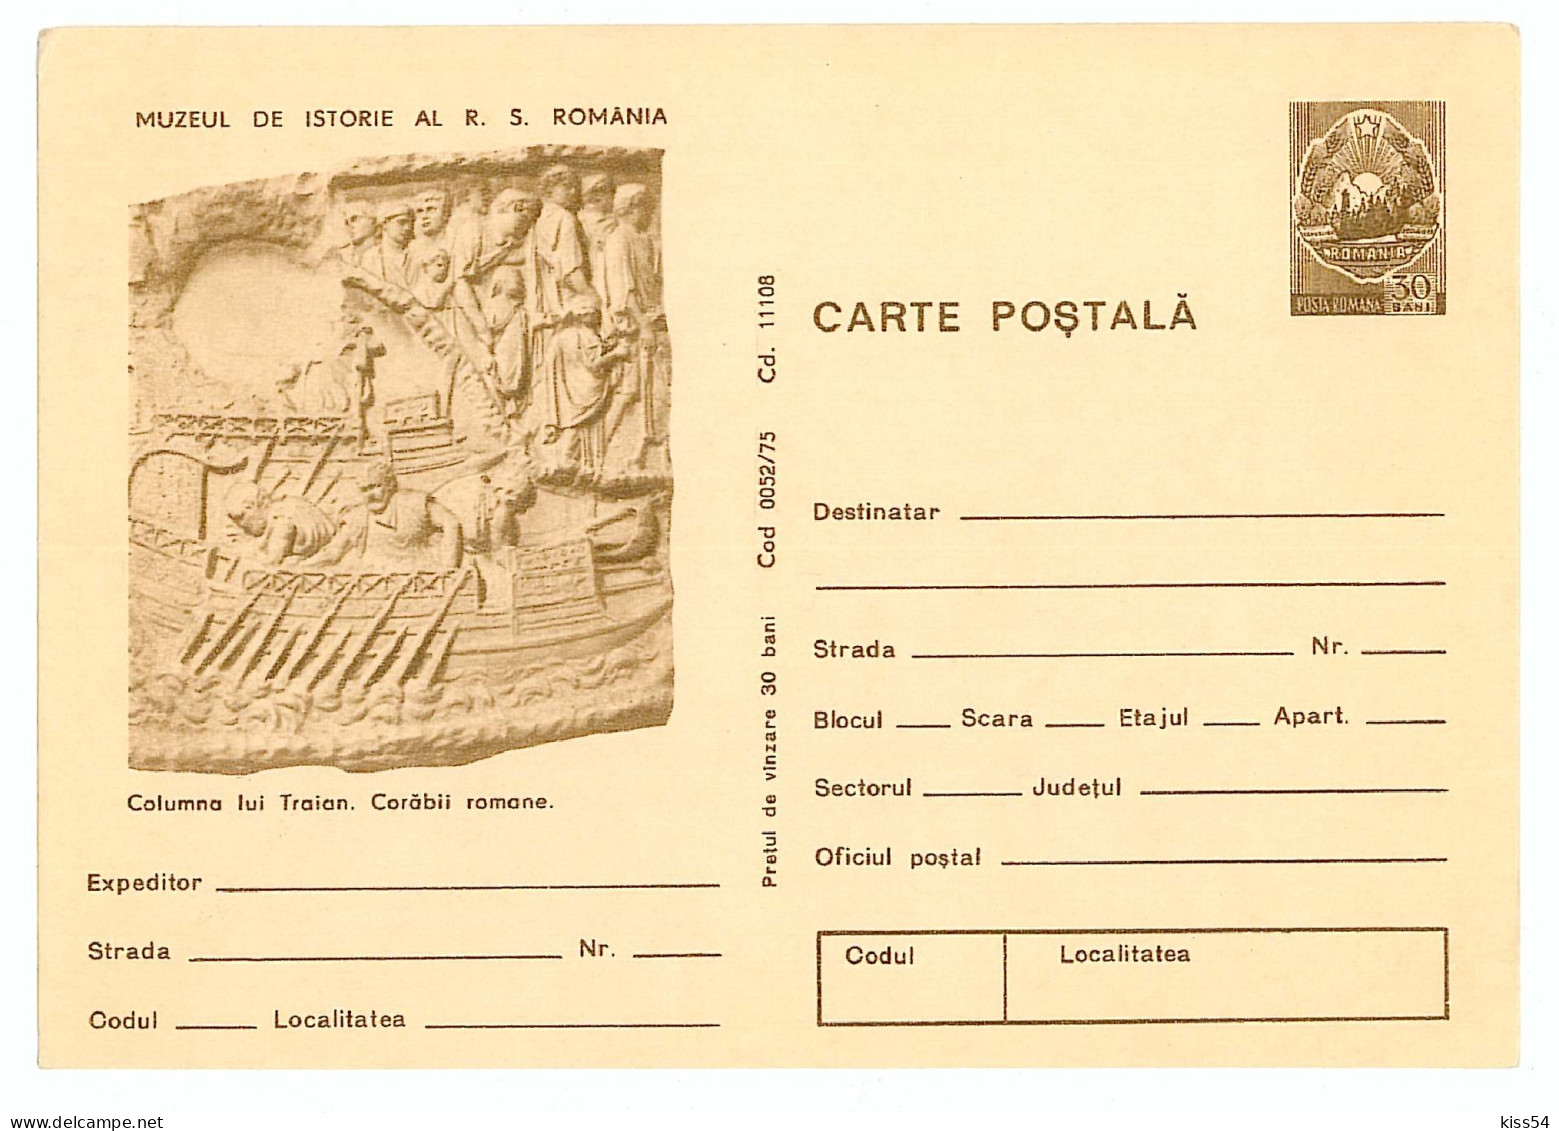 IP 75 - 52 ROME, Trajan's Column, Romania - Stationery - Unused - 1975 - Postal Stationery